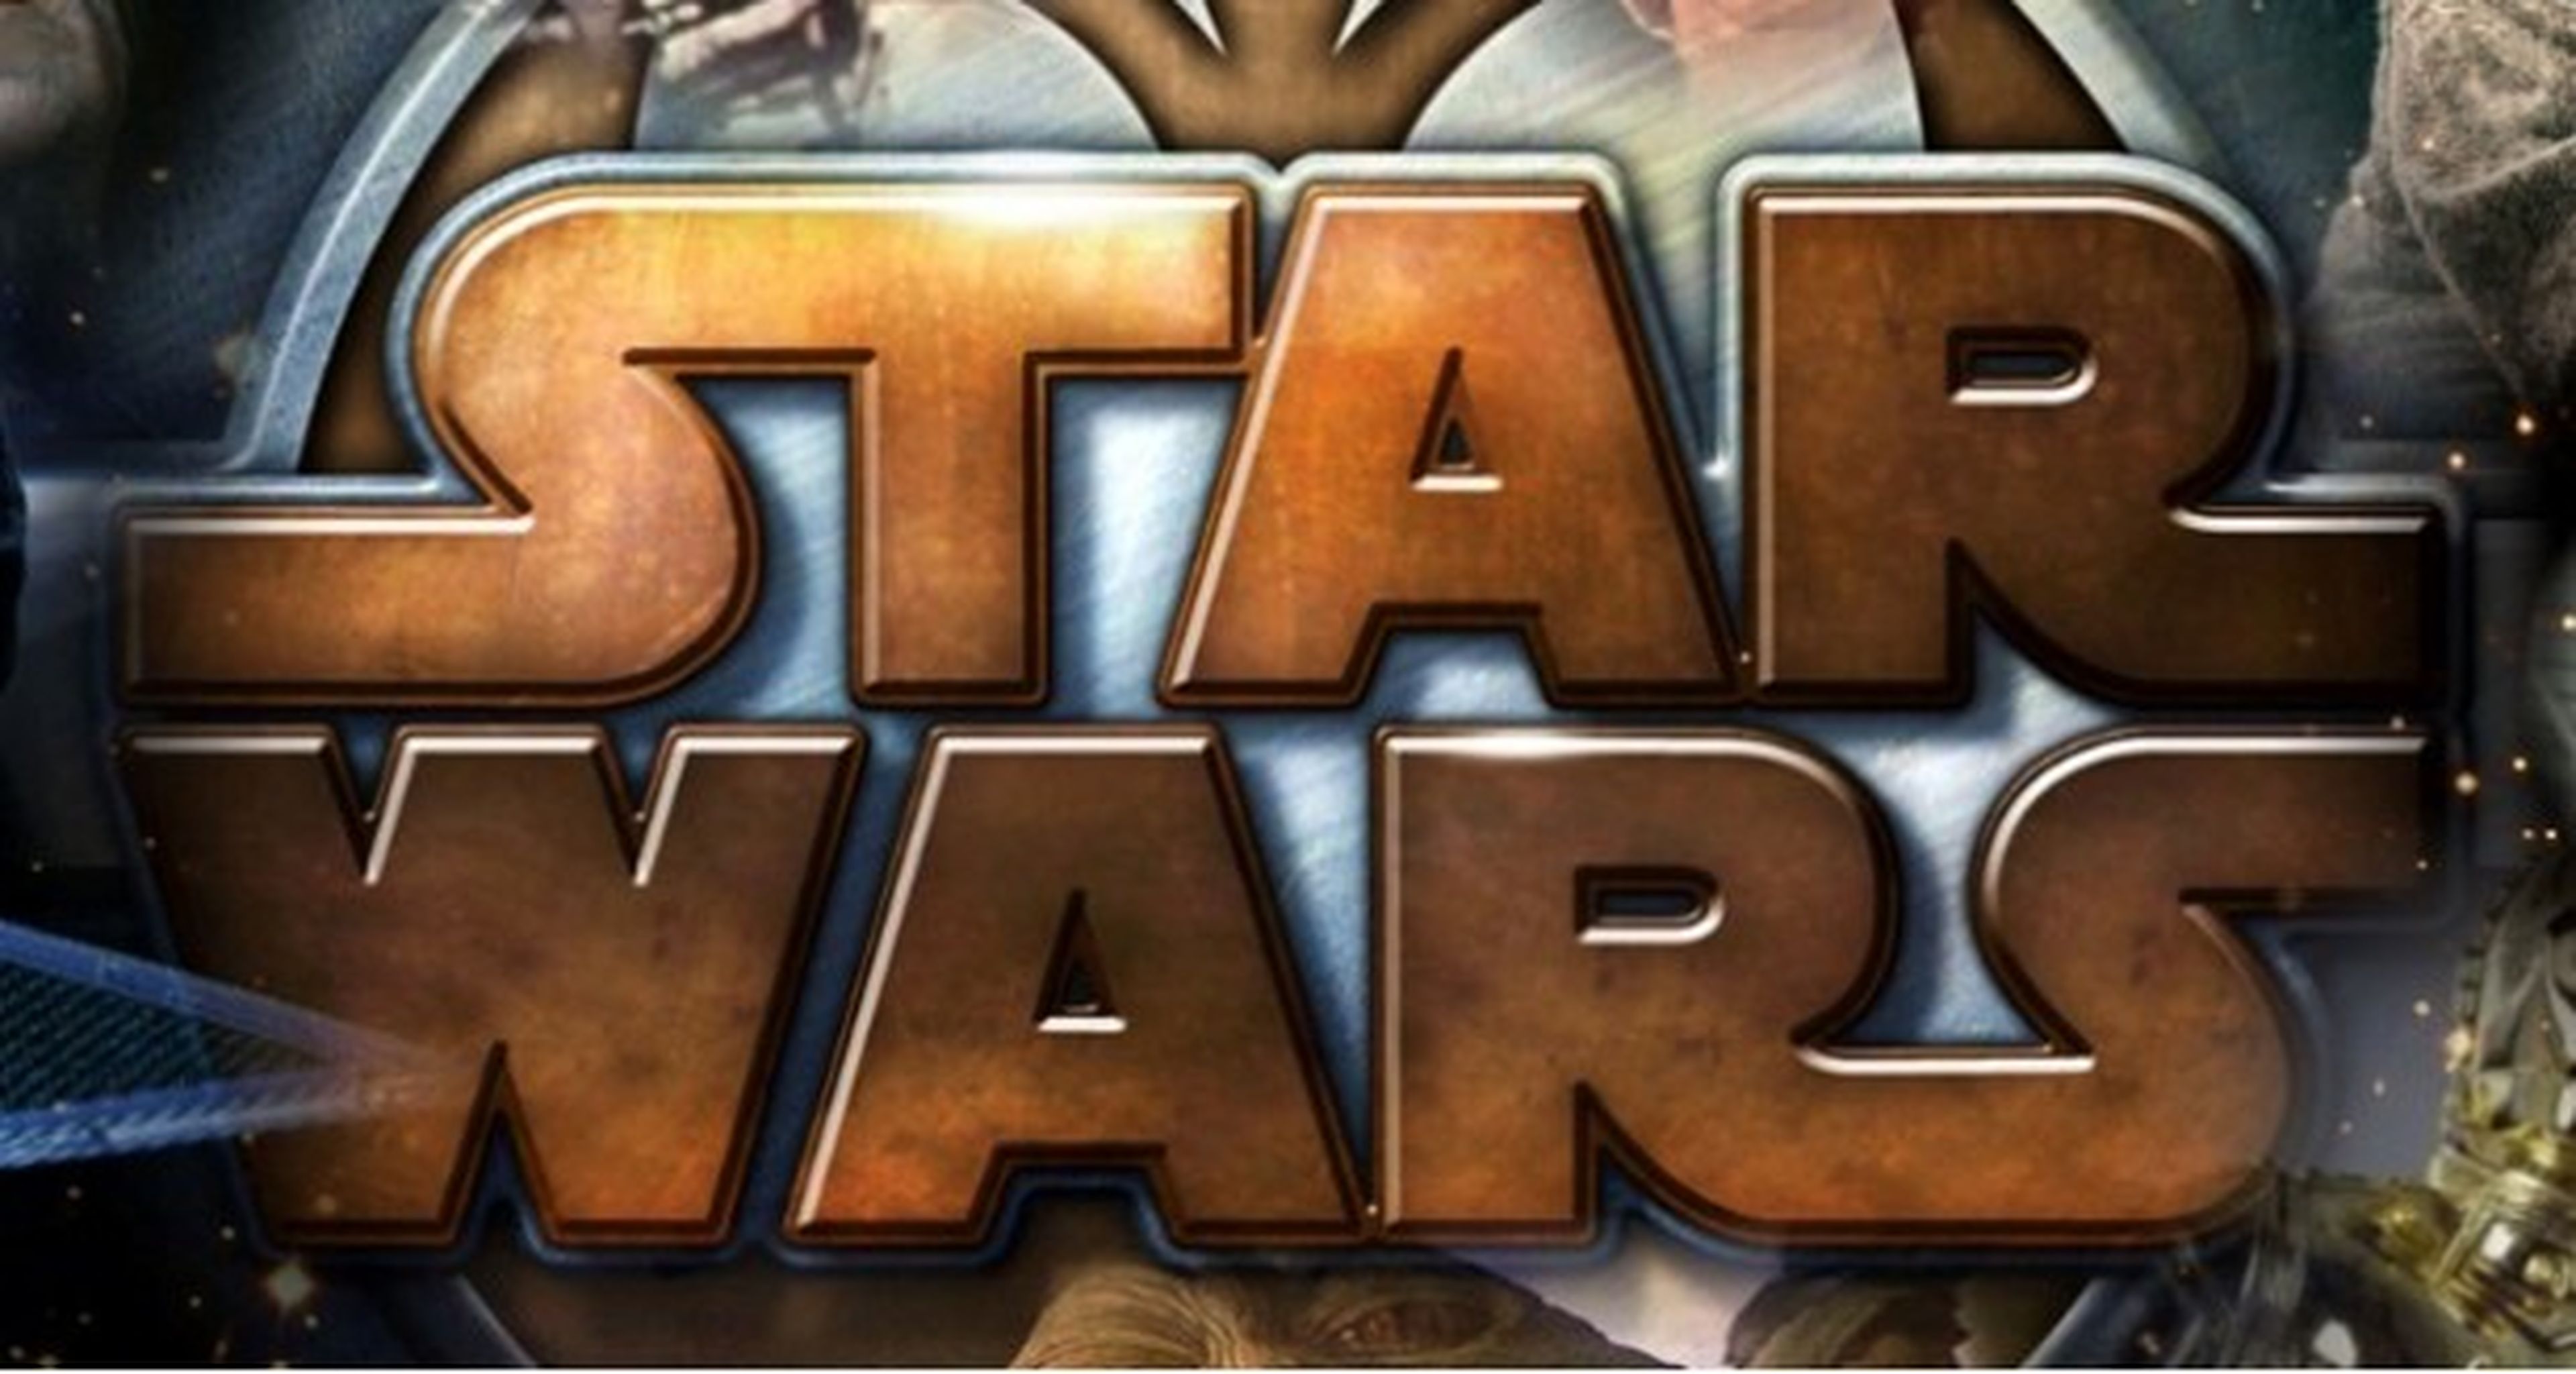 DICE LA se encargará de los nuevos juegos de Star Wars